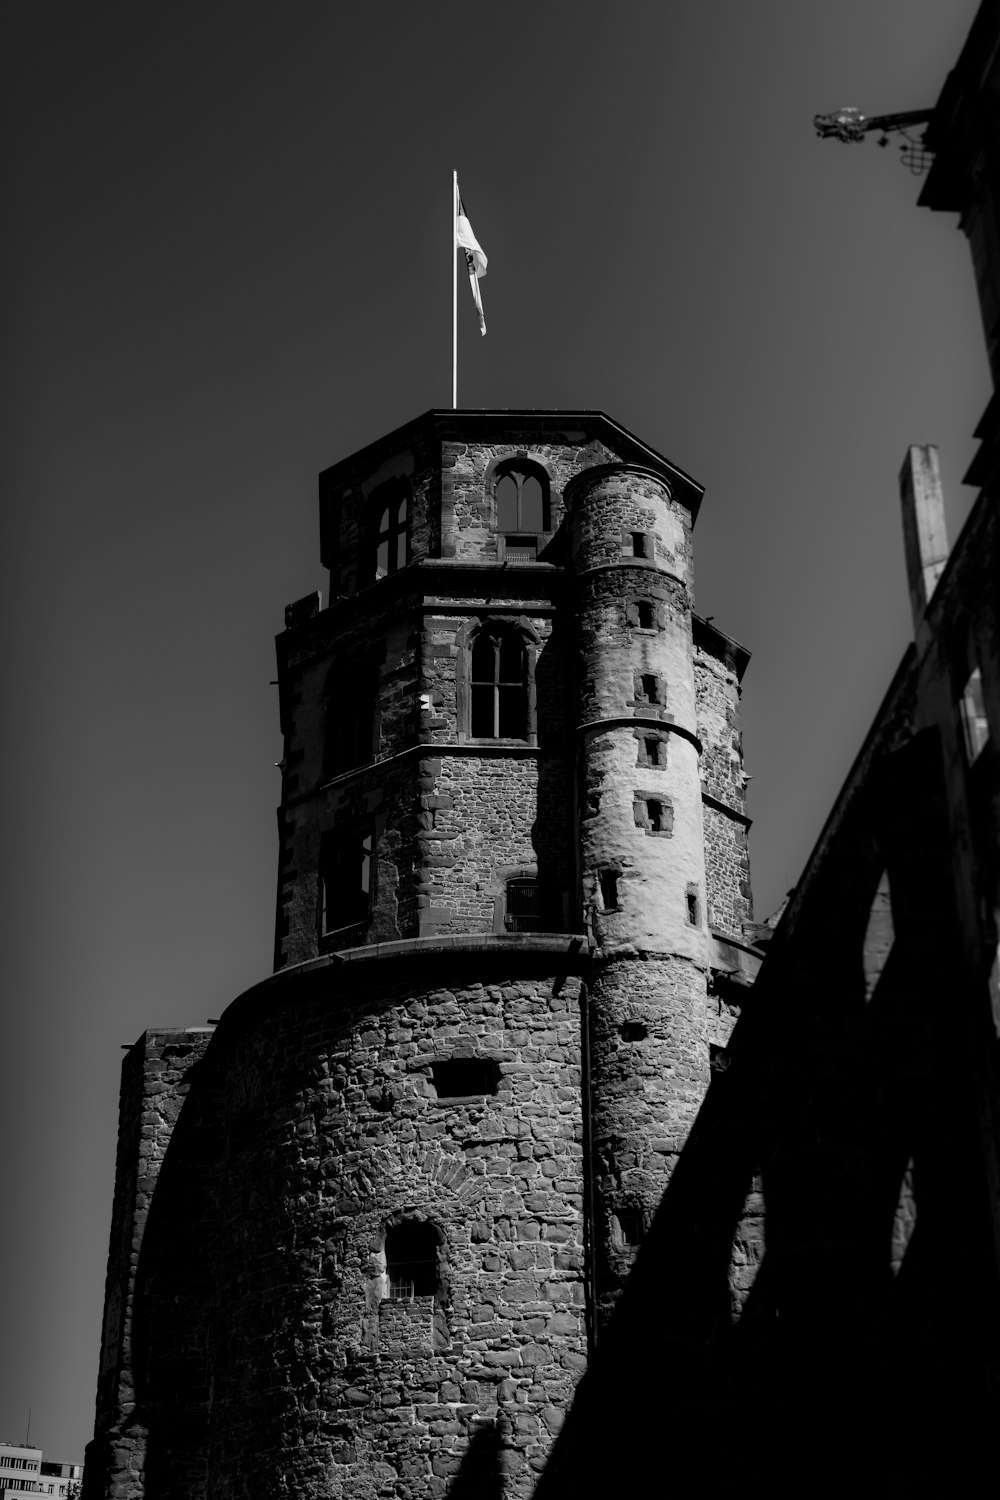 una torre alta con una bandera en la parte superior